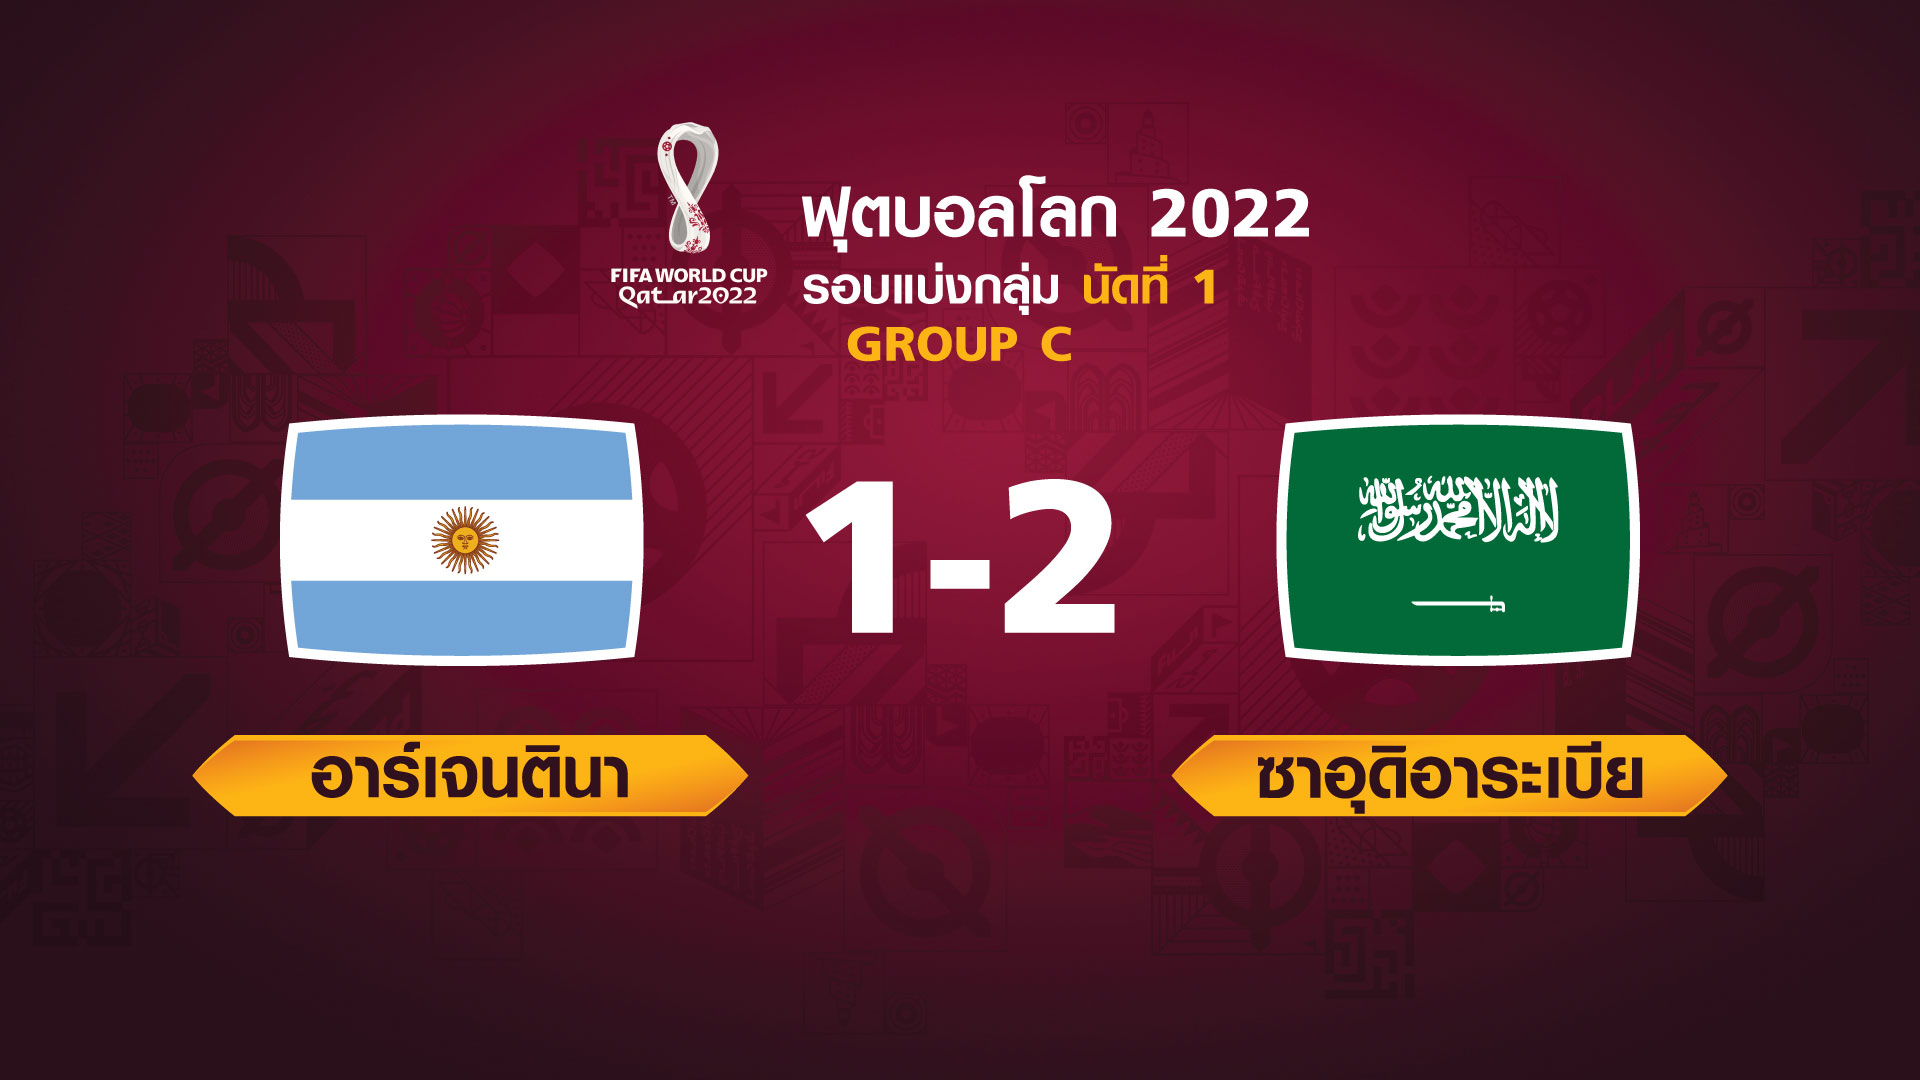 ฟุตบอลโลก 2022 รอบแบ่งกลุ่ม นัดแรก ระหว่าง Argentina vs Saudi Arabia